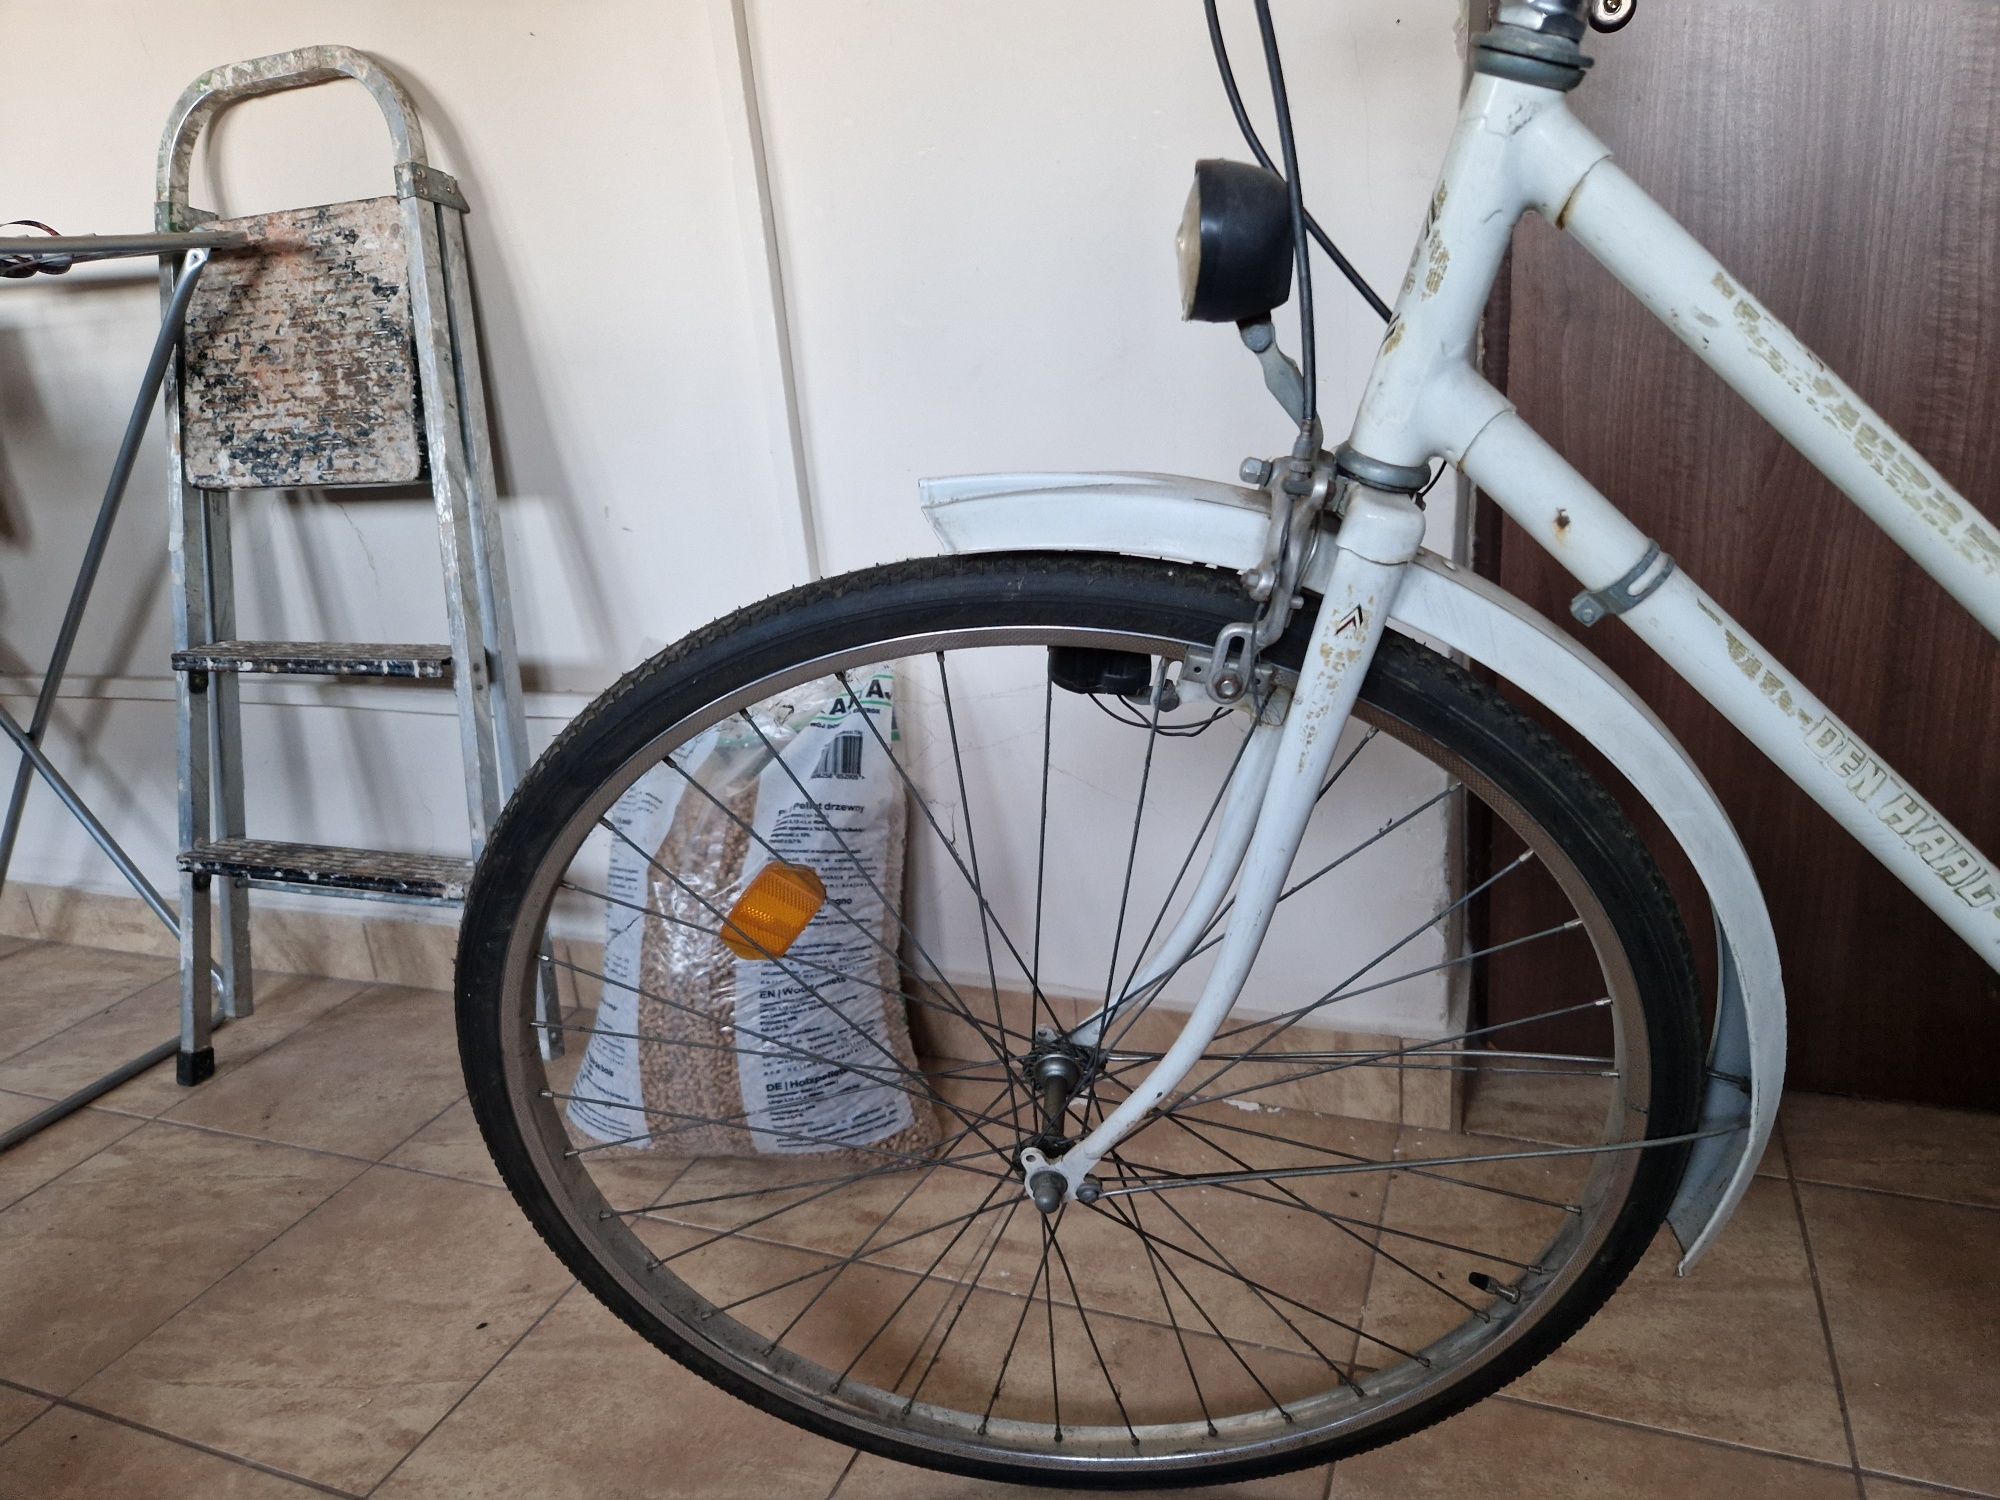 Oryginalna holenderka (rower) sprowadzona z Holandii